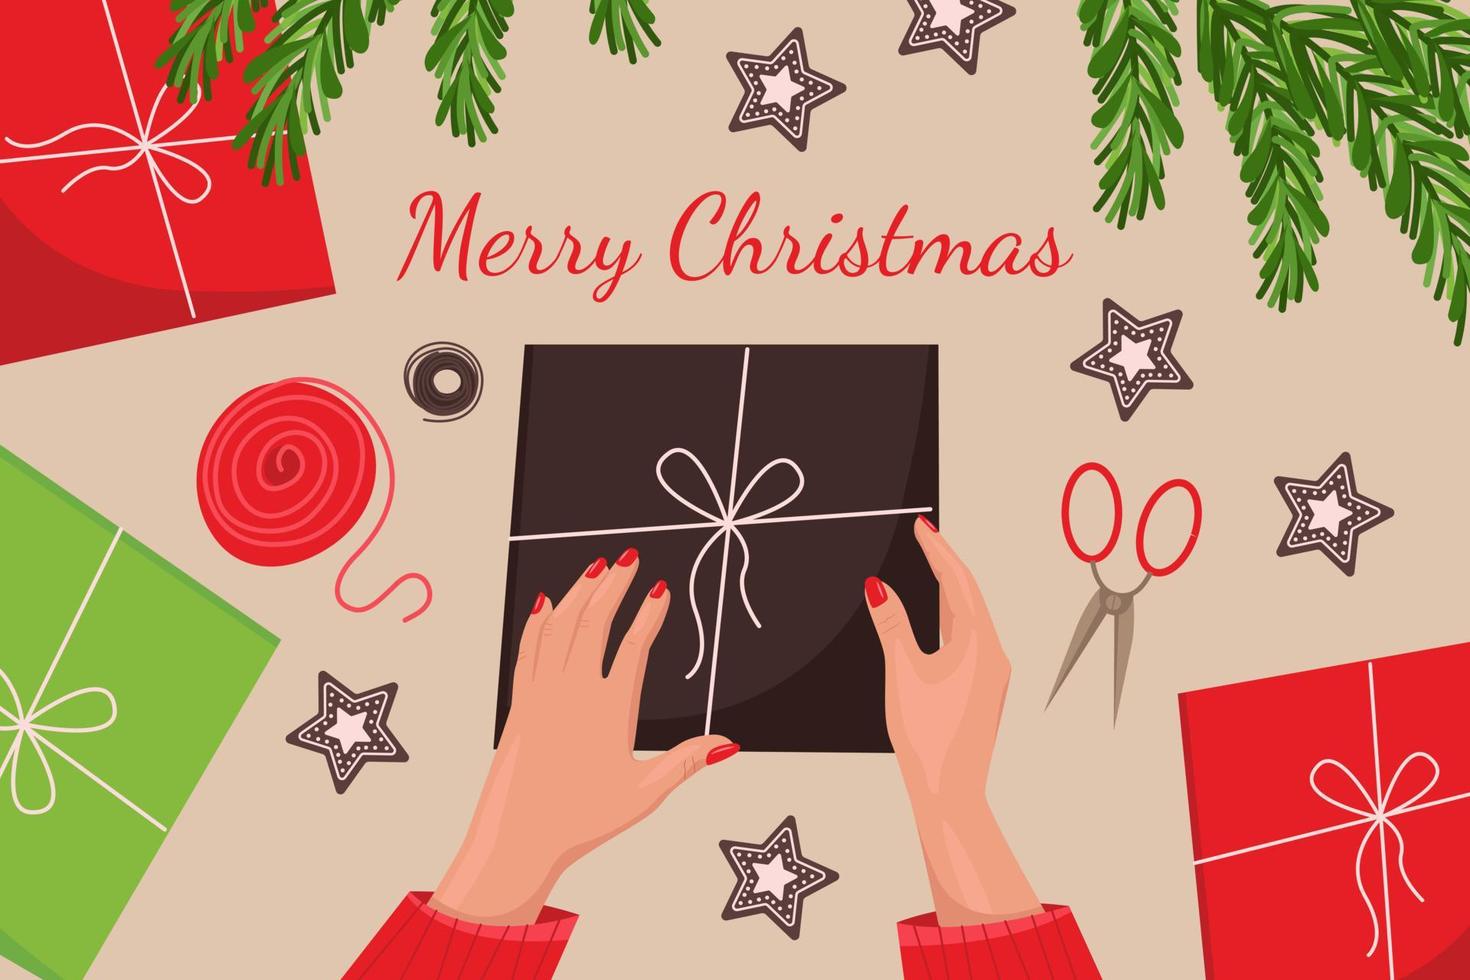 embrulhar caixas de presente para feriados de natal e ano novo, vista superior, biscoitos de gengibre, galhos de árvores de natal, presentes, mãos femininas com manicure vermelha. ilustração vetorial em estilo simples vetor